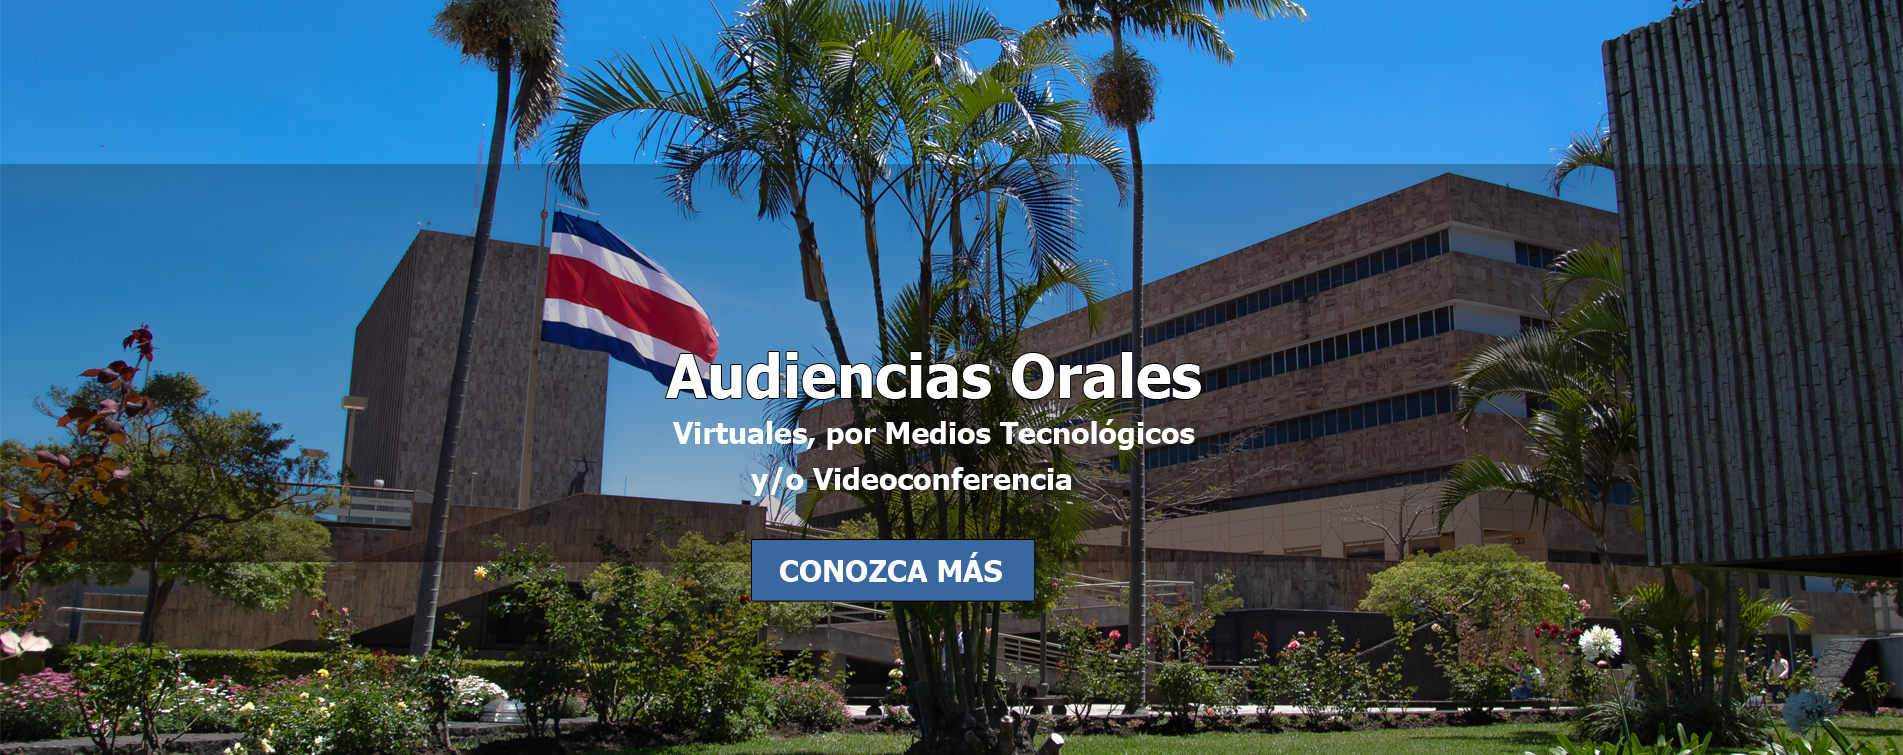 Audiencias Orales - Virtuales, por medios Tecnológicos y/o Videoconferencia 